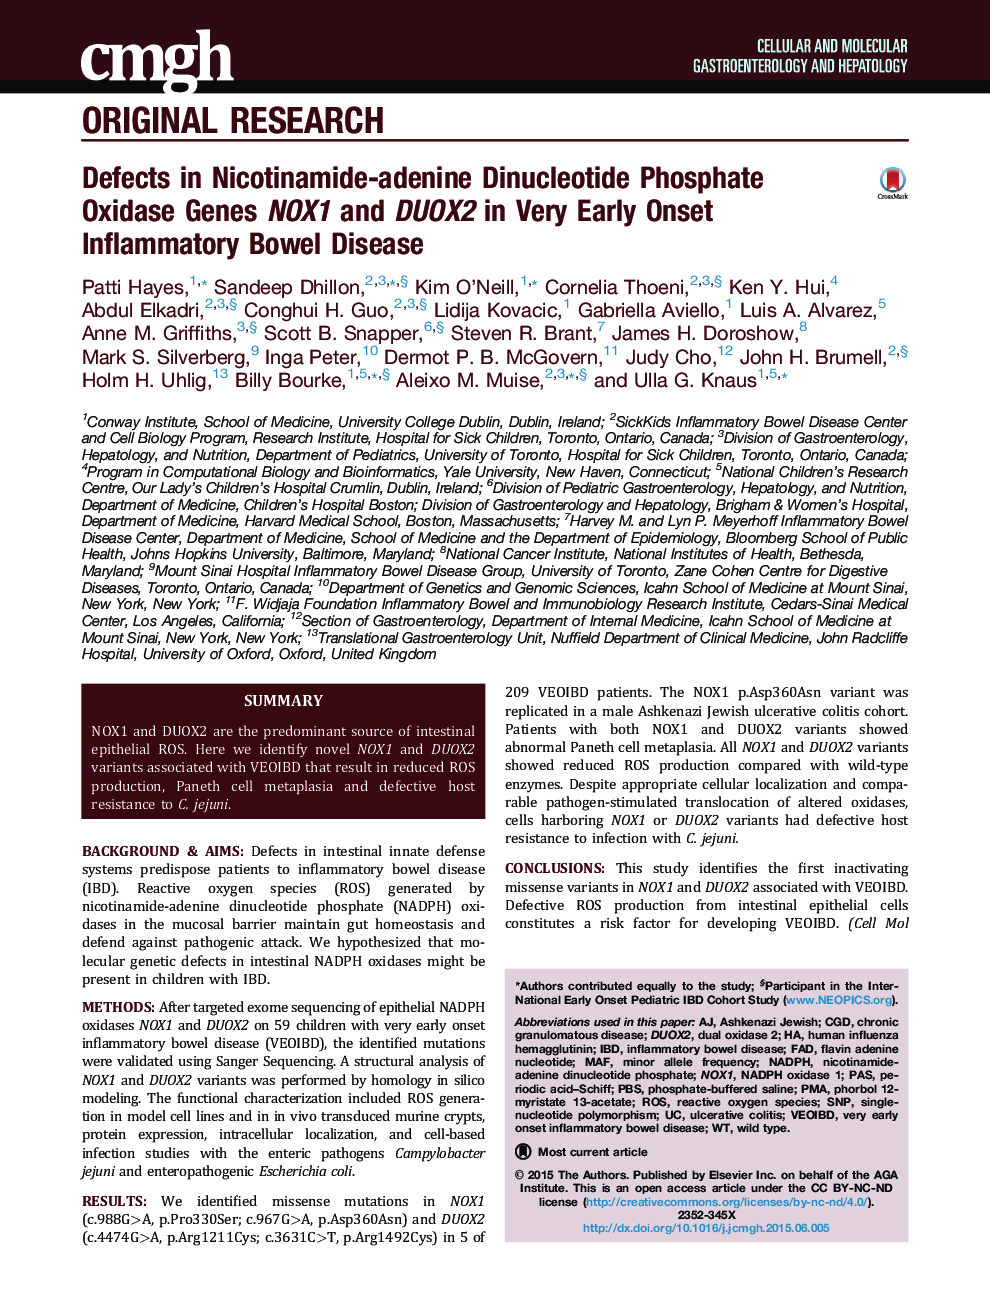 Defects in Nicotinamide-adenine Dinucleotide Phosphate Oxidase Genes NOX1 and DUOX2 in Very Early Onset Inflammatory Bowel Disease 